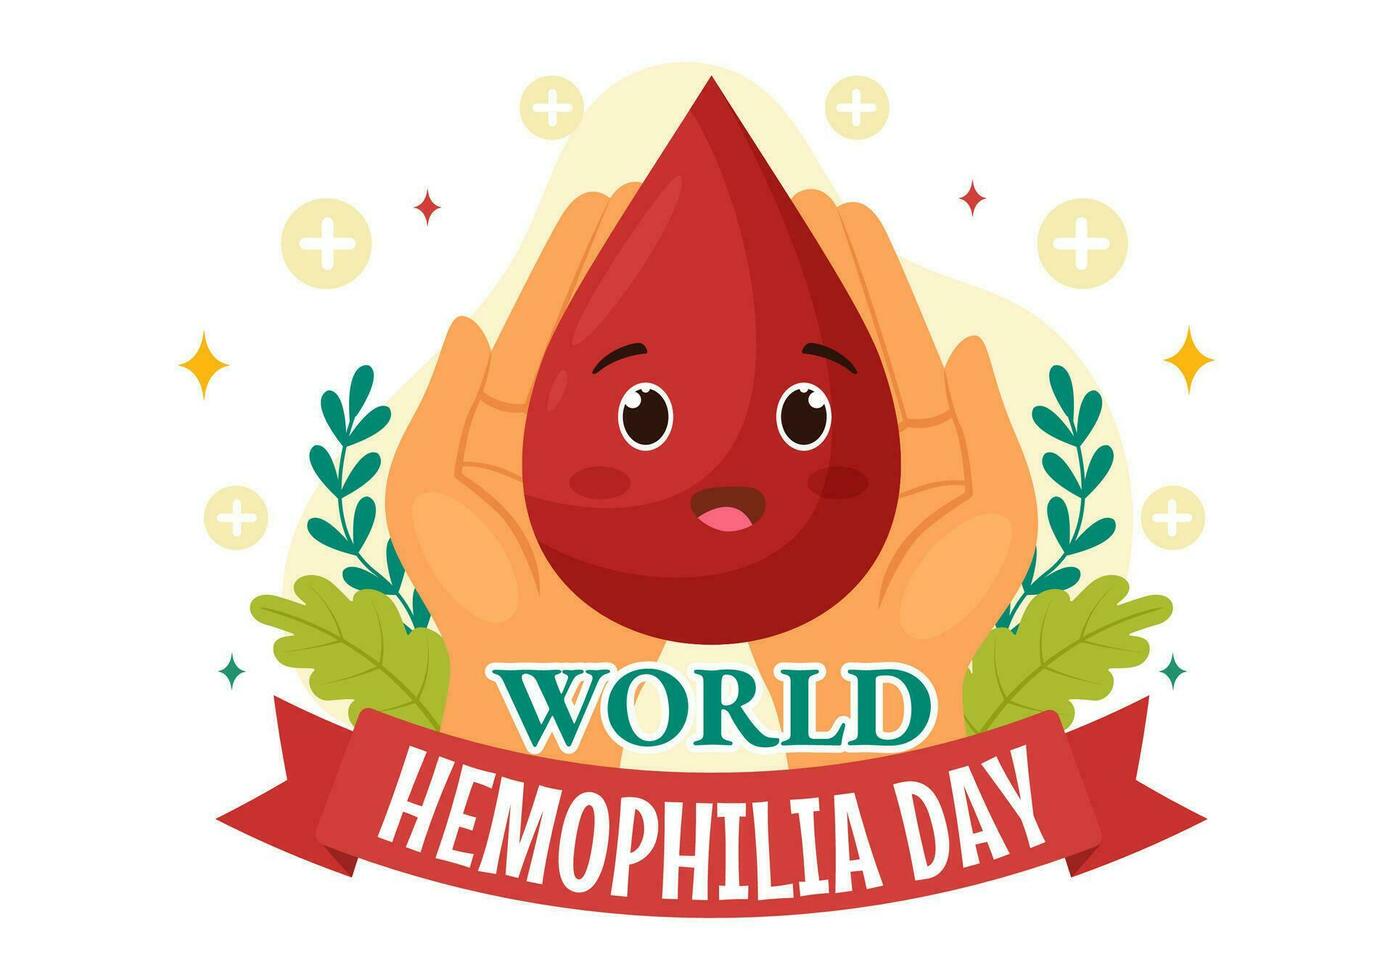 mundo hemofilia día vector ilustración en abril 17 con rojo sangrado sangre y tierra mapa para conciencia cuidado de la salud en dibujos animados antecedentes diseño